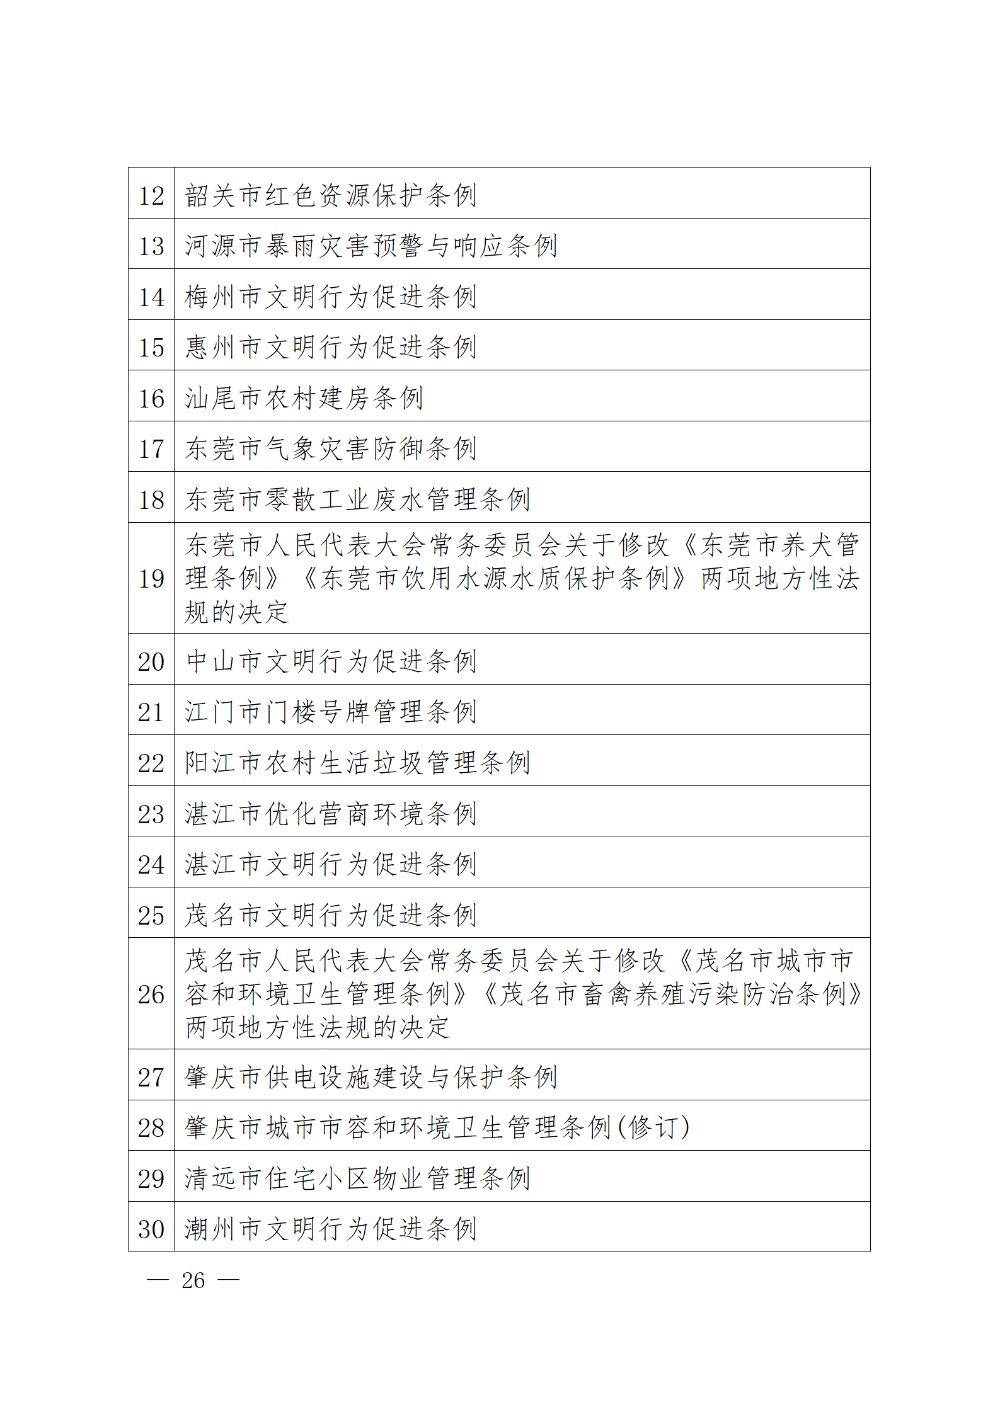 230115-（登报版定稿）广东省人民代表大会常务委员会工作报告_26.png